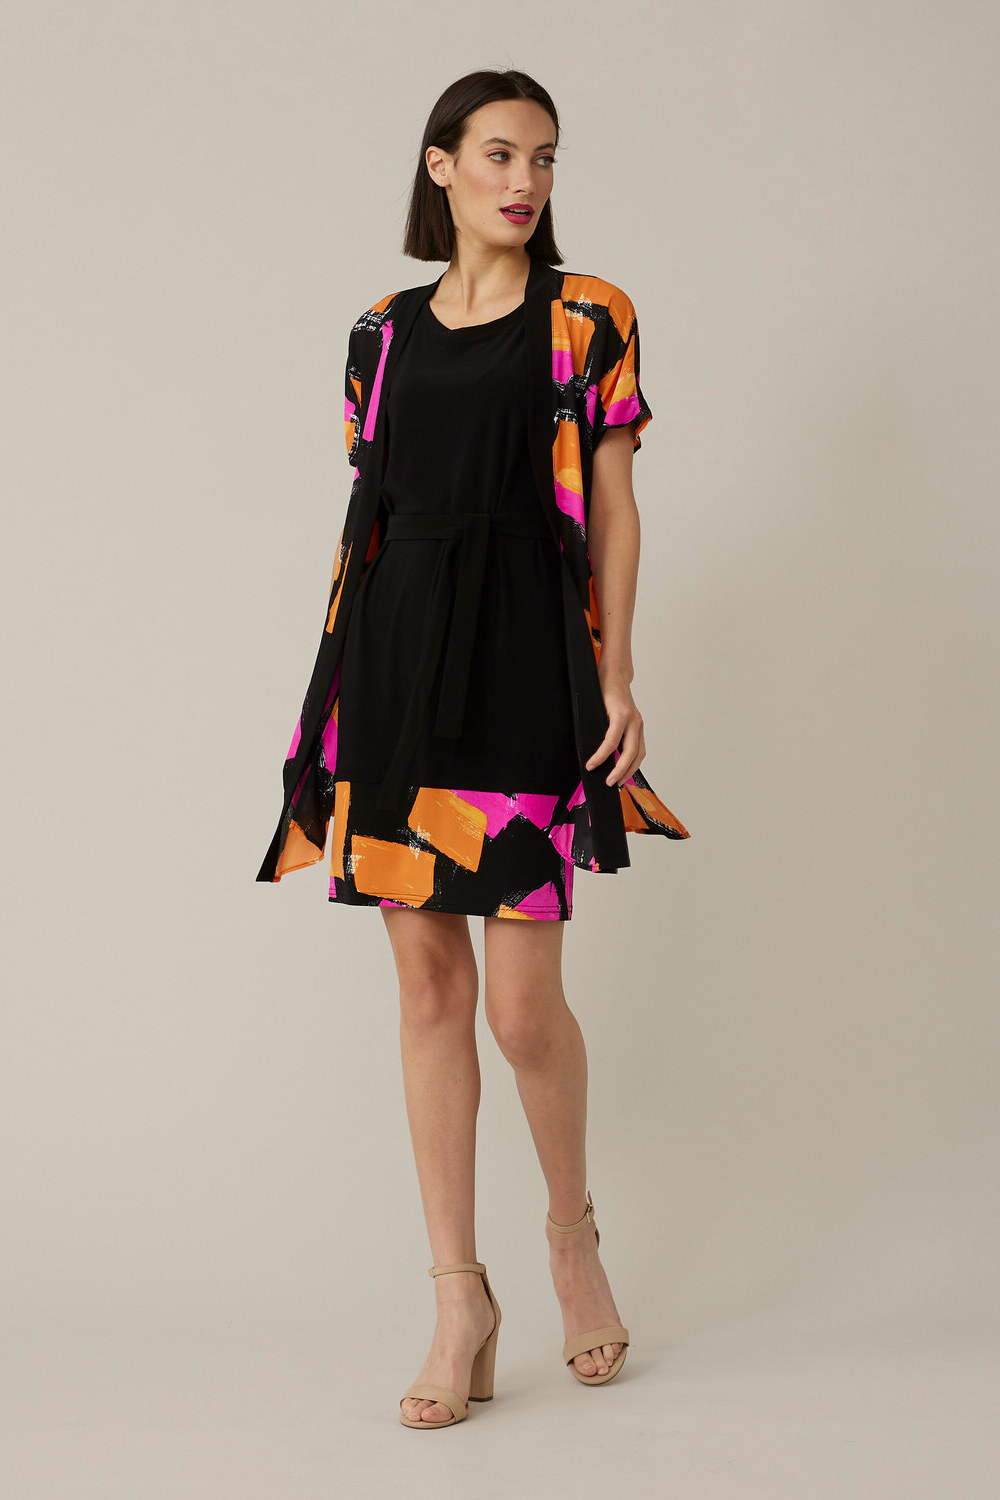 Joseph Ribkoff Multi-Coloured Dress Style 221059. Black/multi